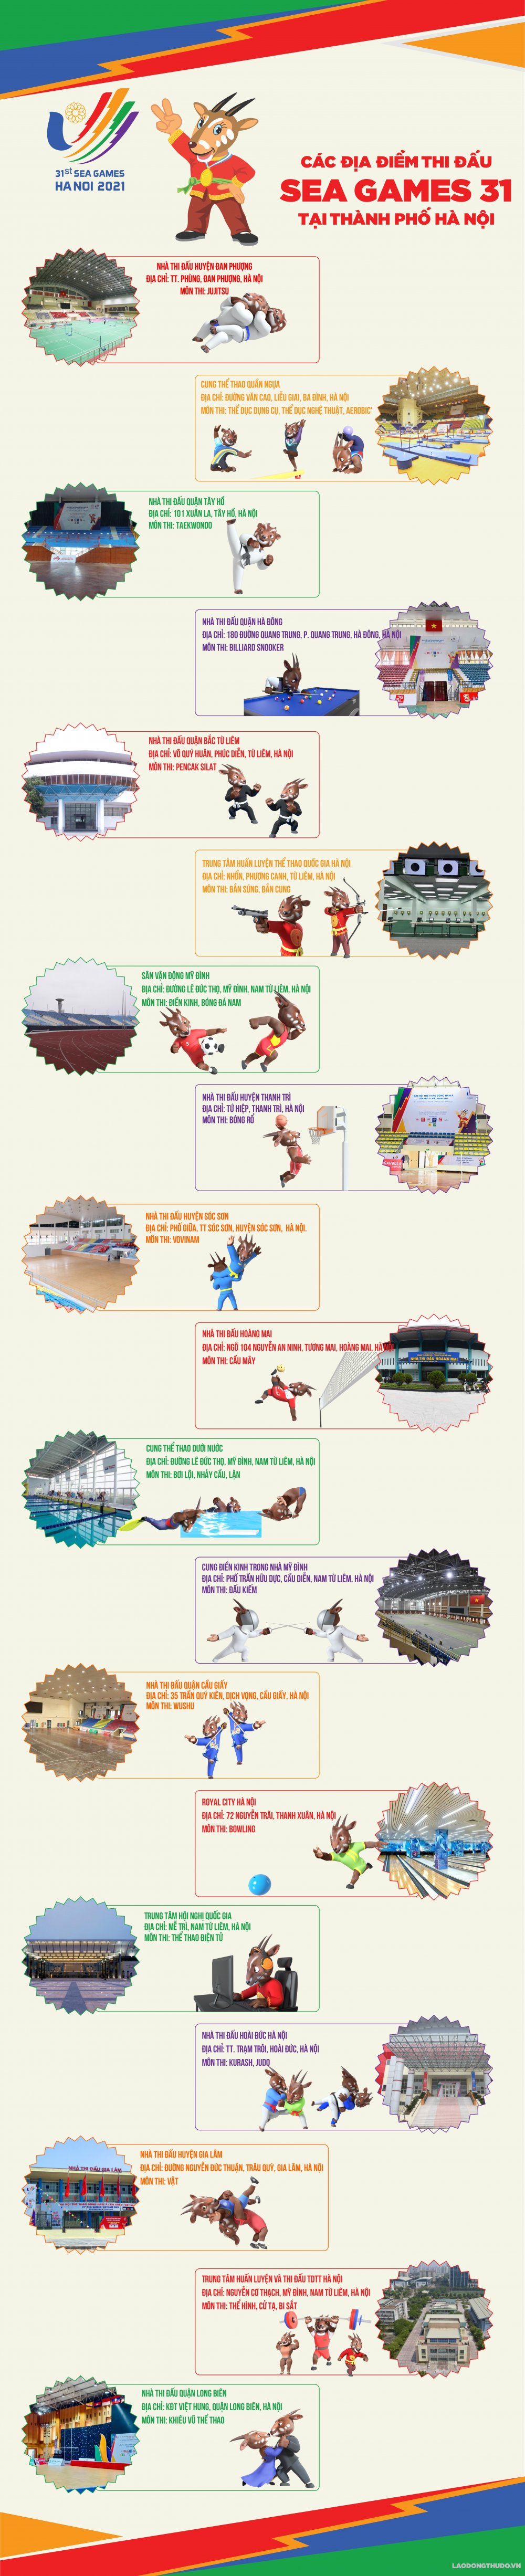 Infographic: Các địa điểm thi đấu SEA Games 31 tại thành phố Hà Nội